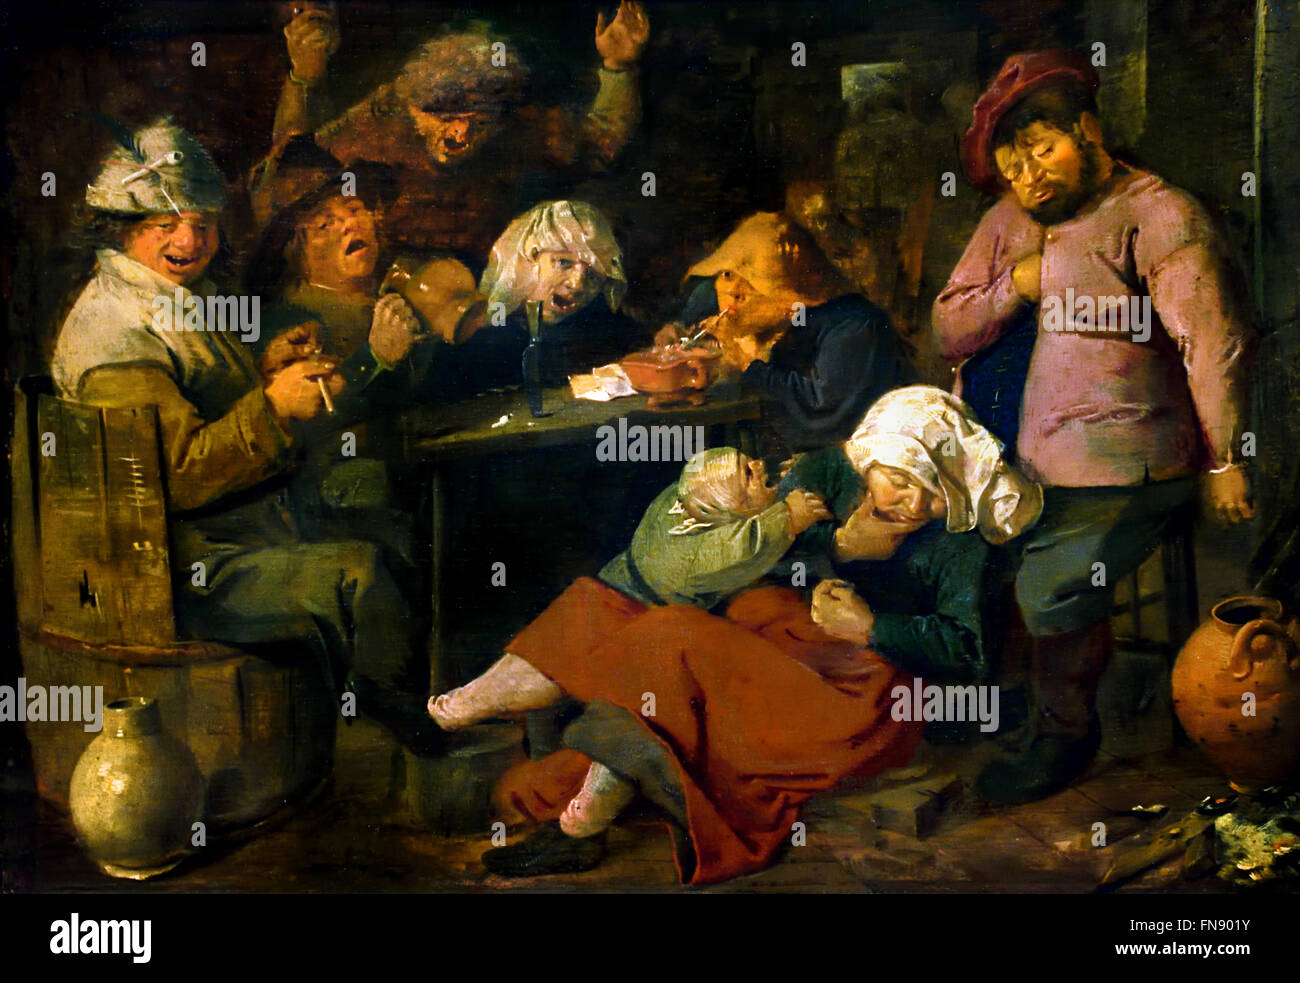 Gasthaus mit betrunkenen Peasants1626 Adriaen Brouwer (1605 – 1638) flämischen niederländischen Malers siebzehnten Jahrhundert Niederlande Belgien Stockfoto